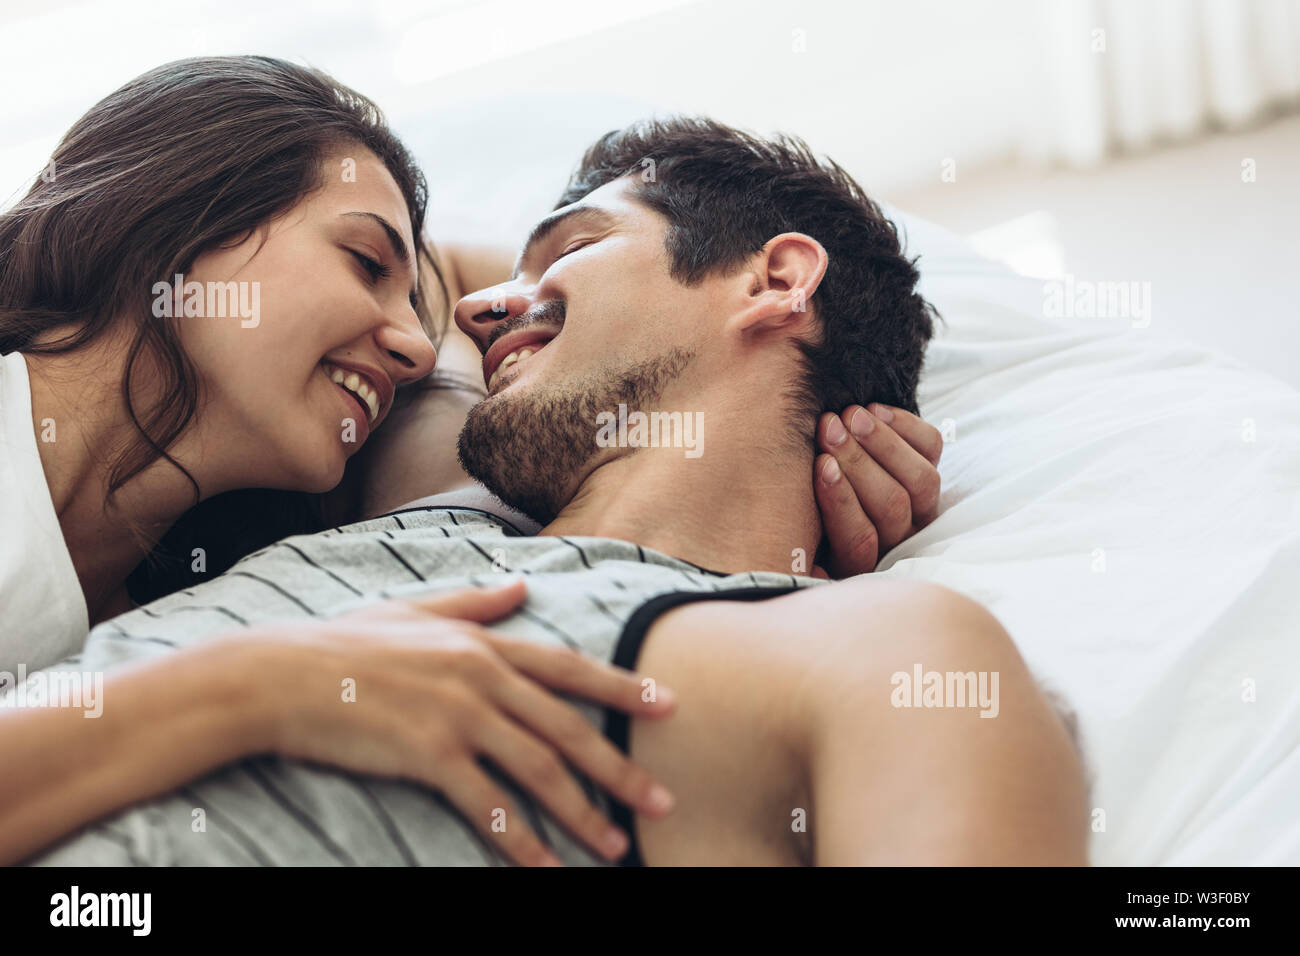 Junges Paar zusammen im Bett liegen. Romantisches Paar verliebt sich einander und lächelnd. Stockfoto